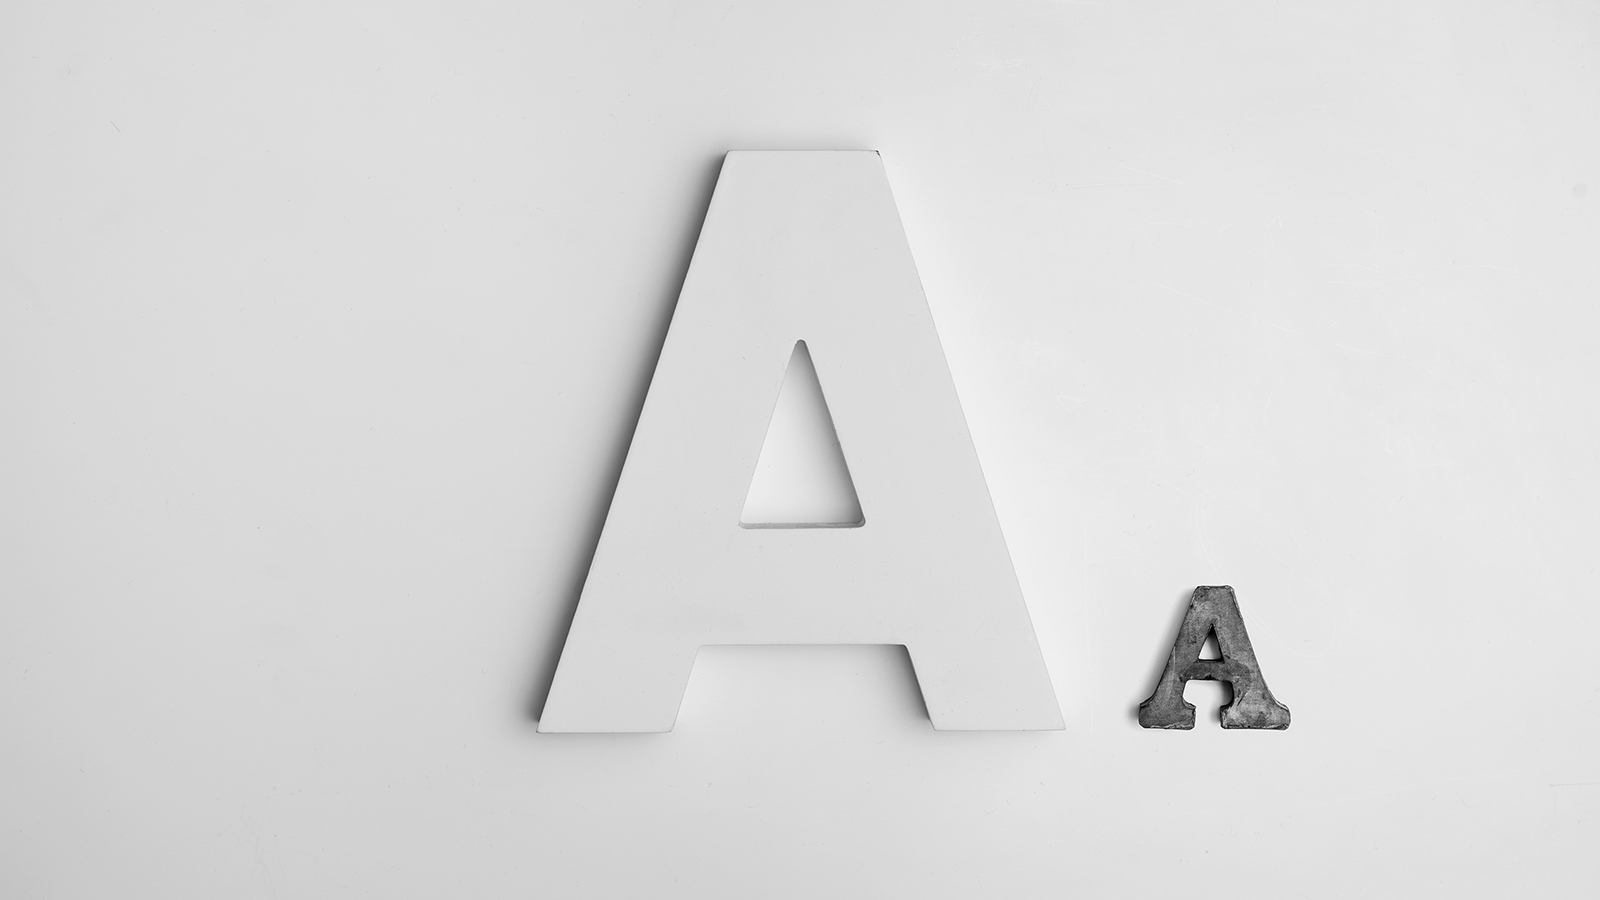 typography desktop wallpaper